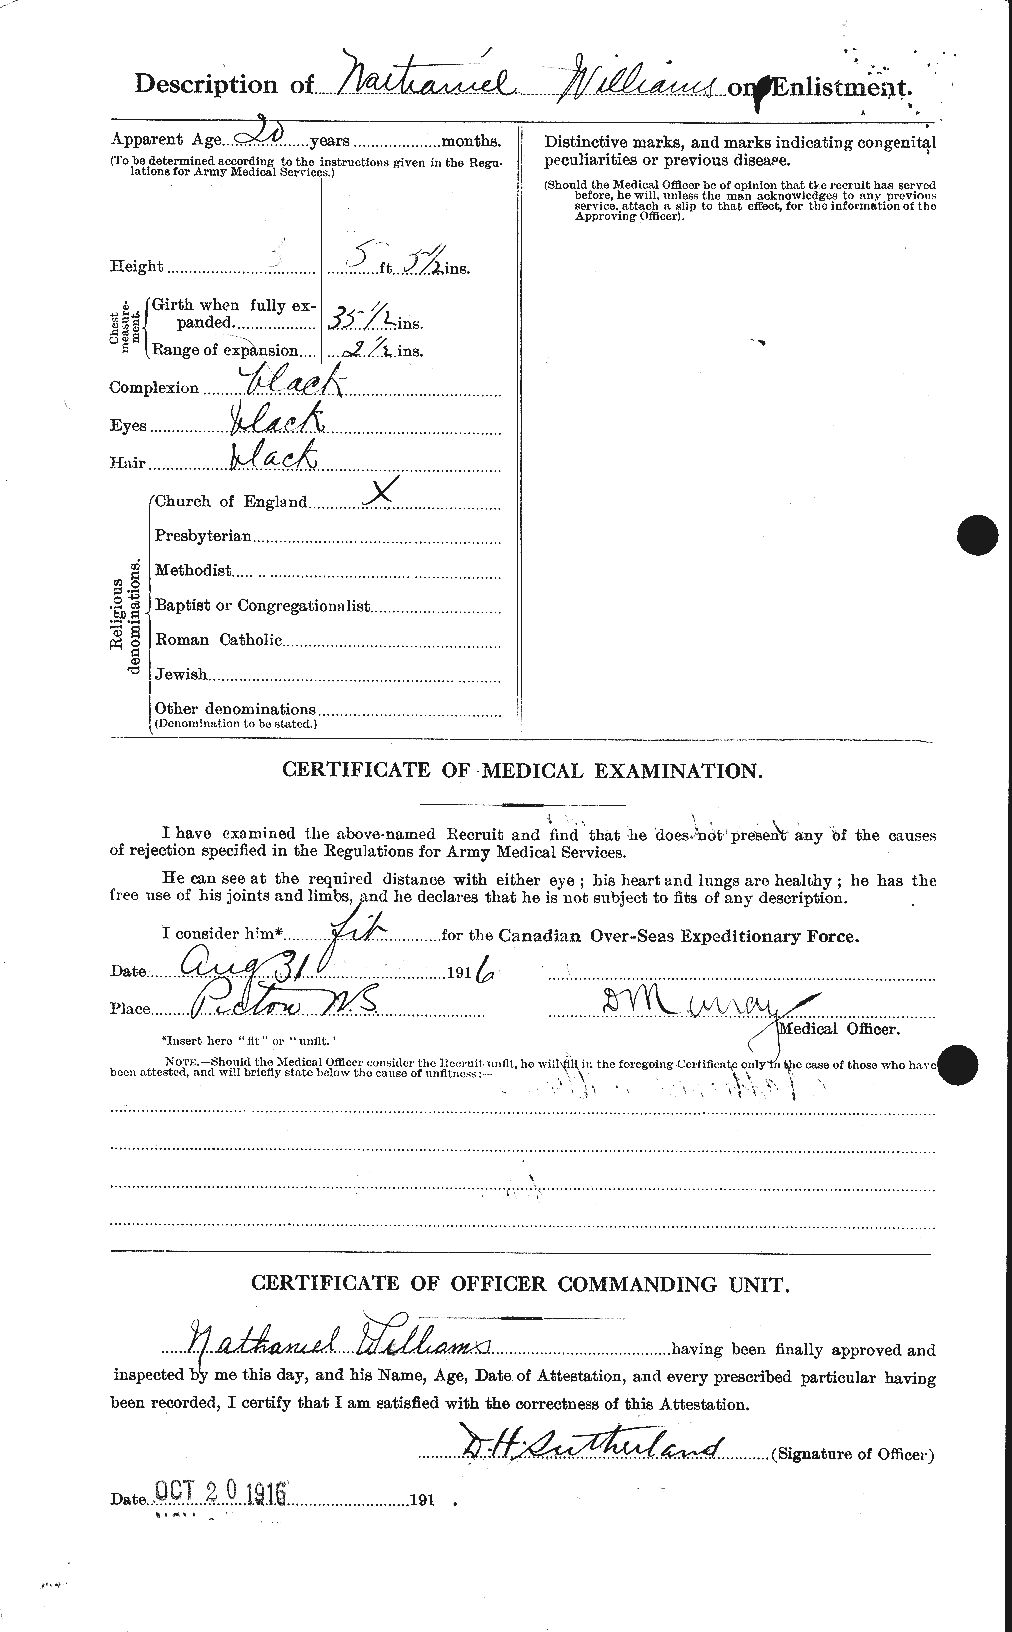 Dossiers du Personnel de la Première Guerre mondiale - CEC 675543b